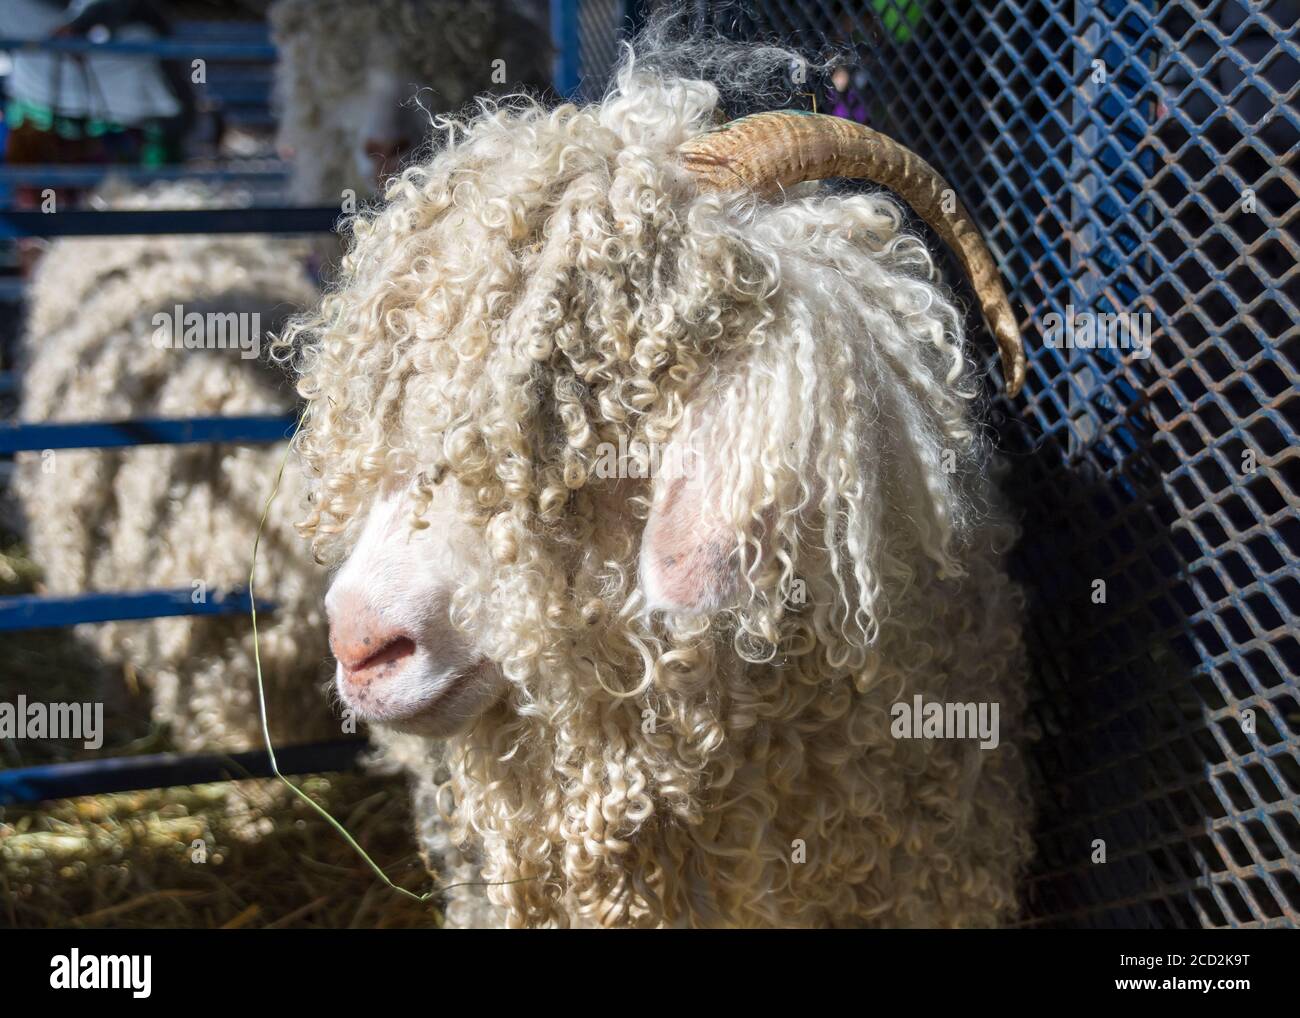 Una capra angora con un lungo cappotto bianco riccio e corna ricurve si trova in una penna in una fiera agricola. Foto Stock